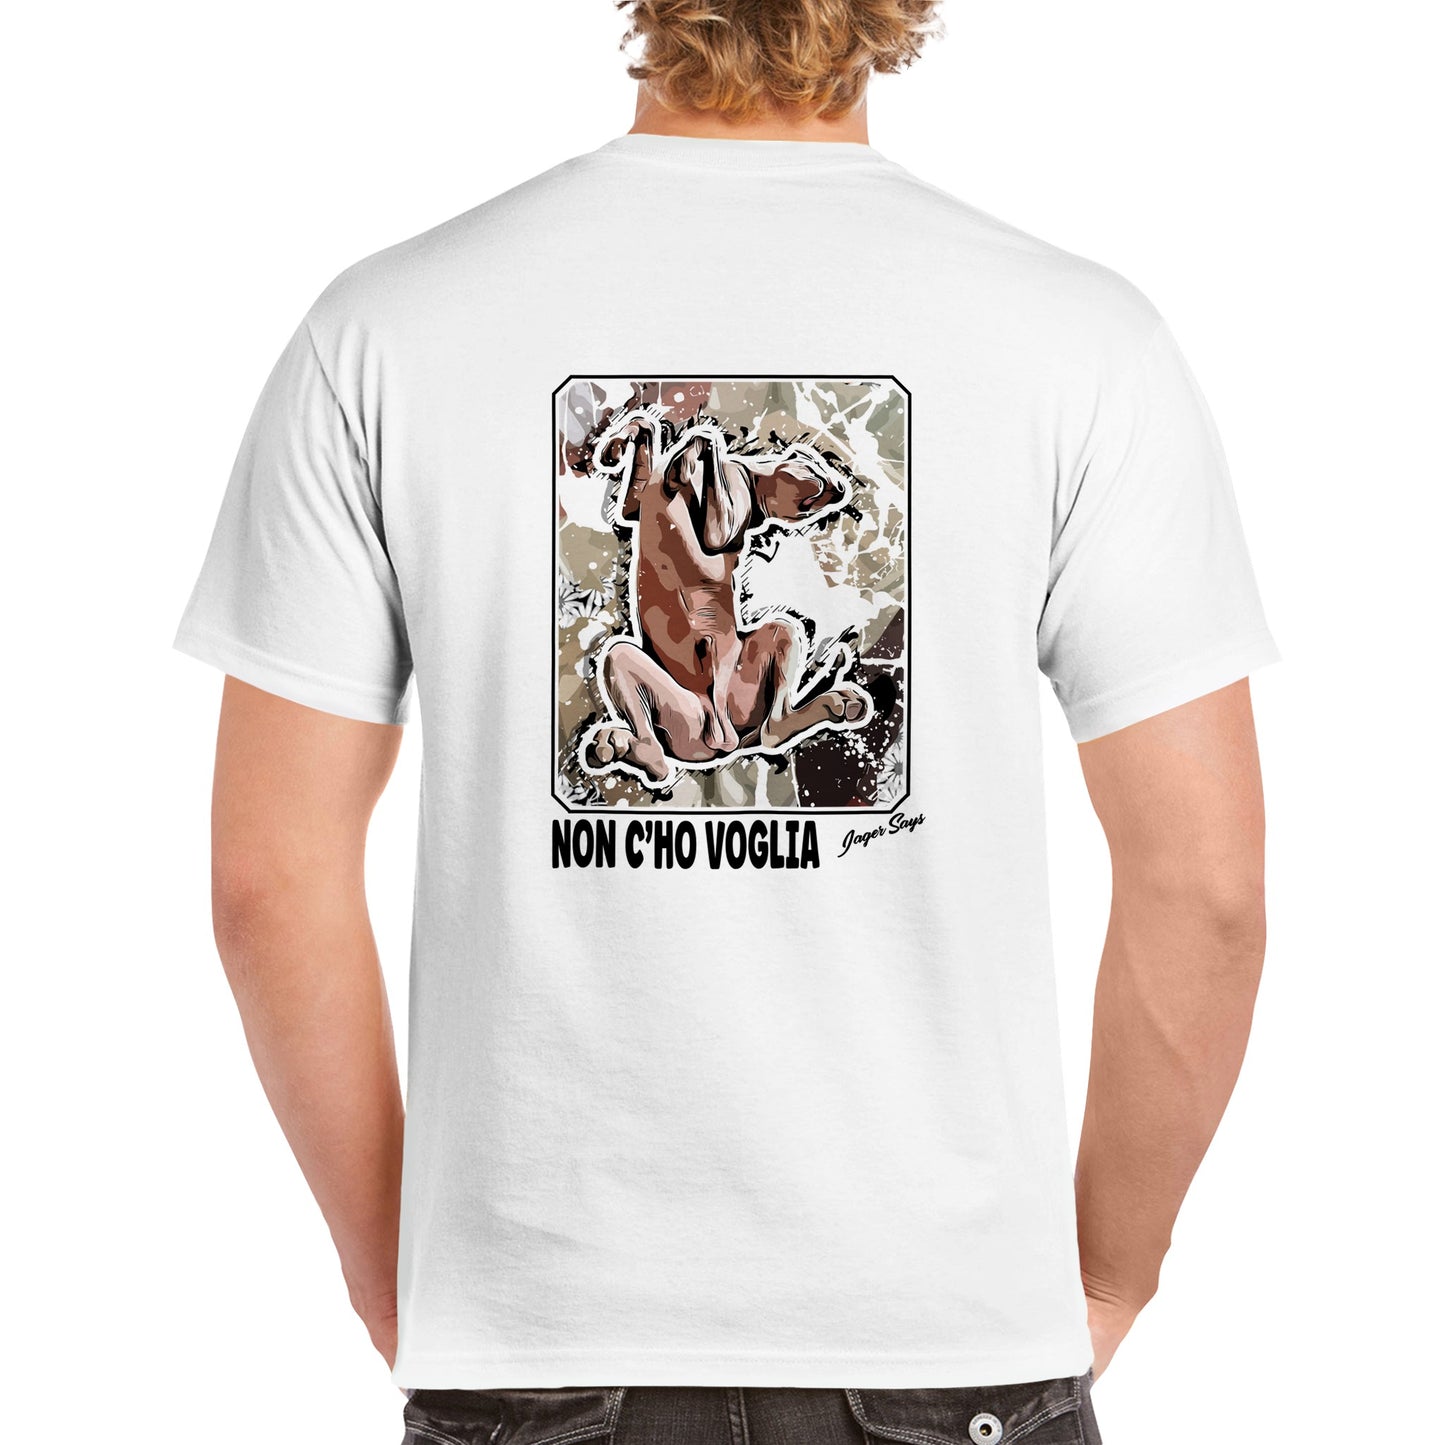 T-shirt BACK Jager Says: NON C'HO VOGLIA